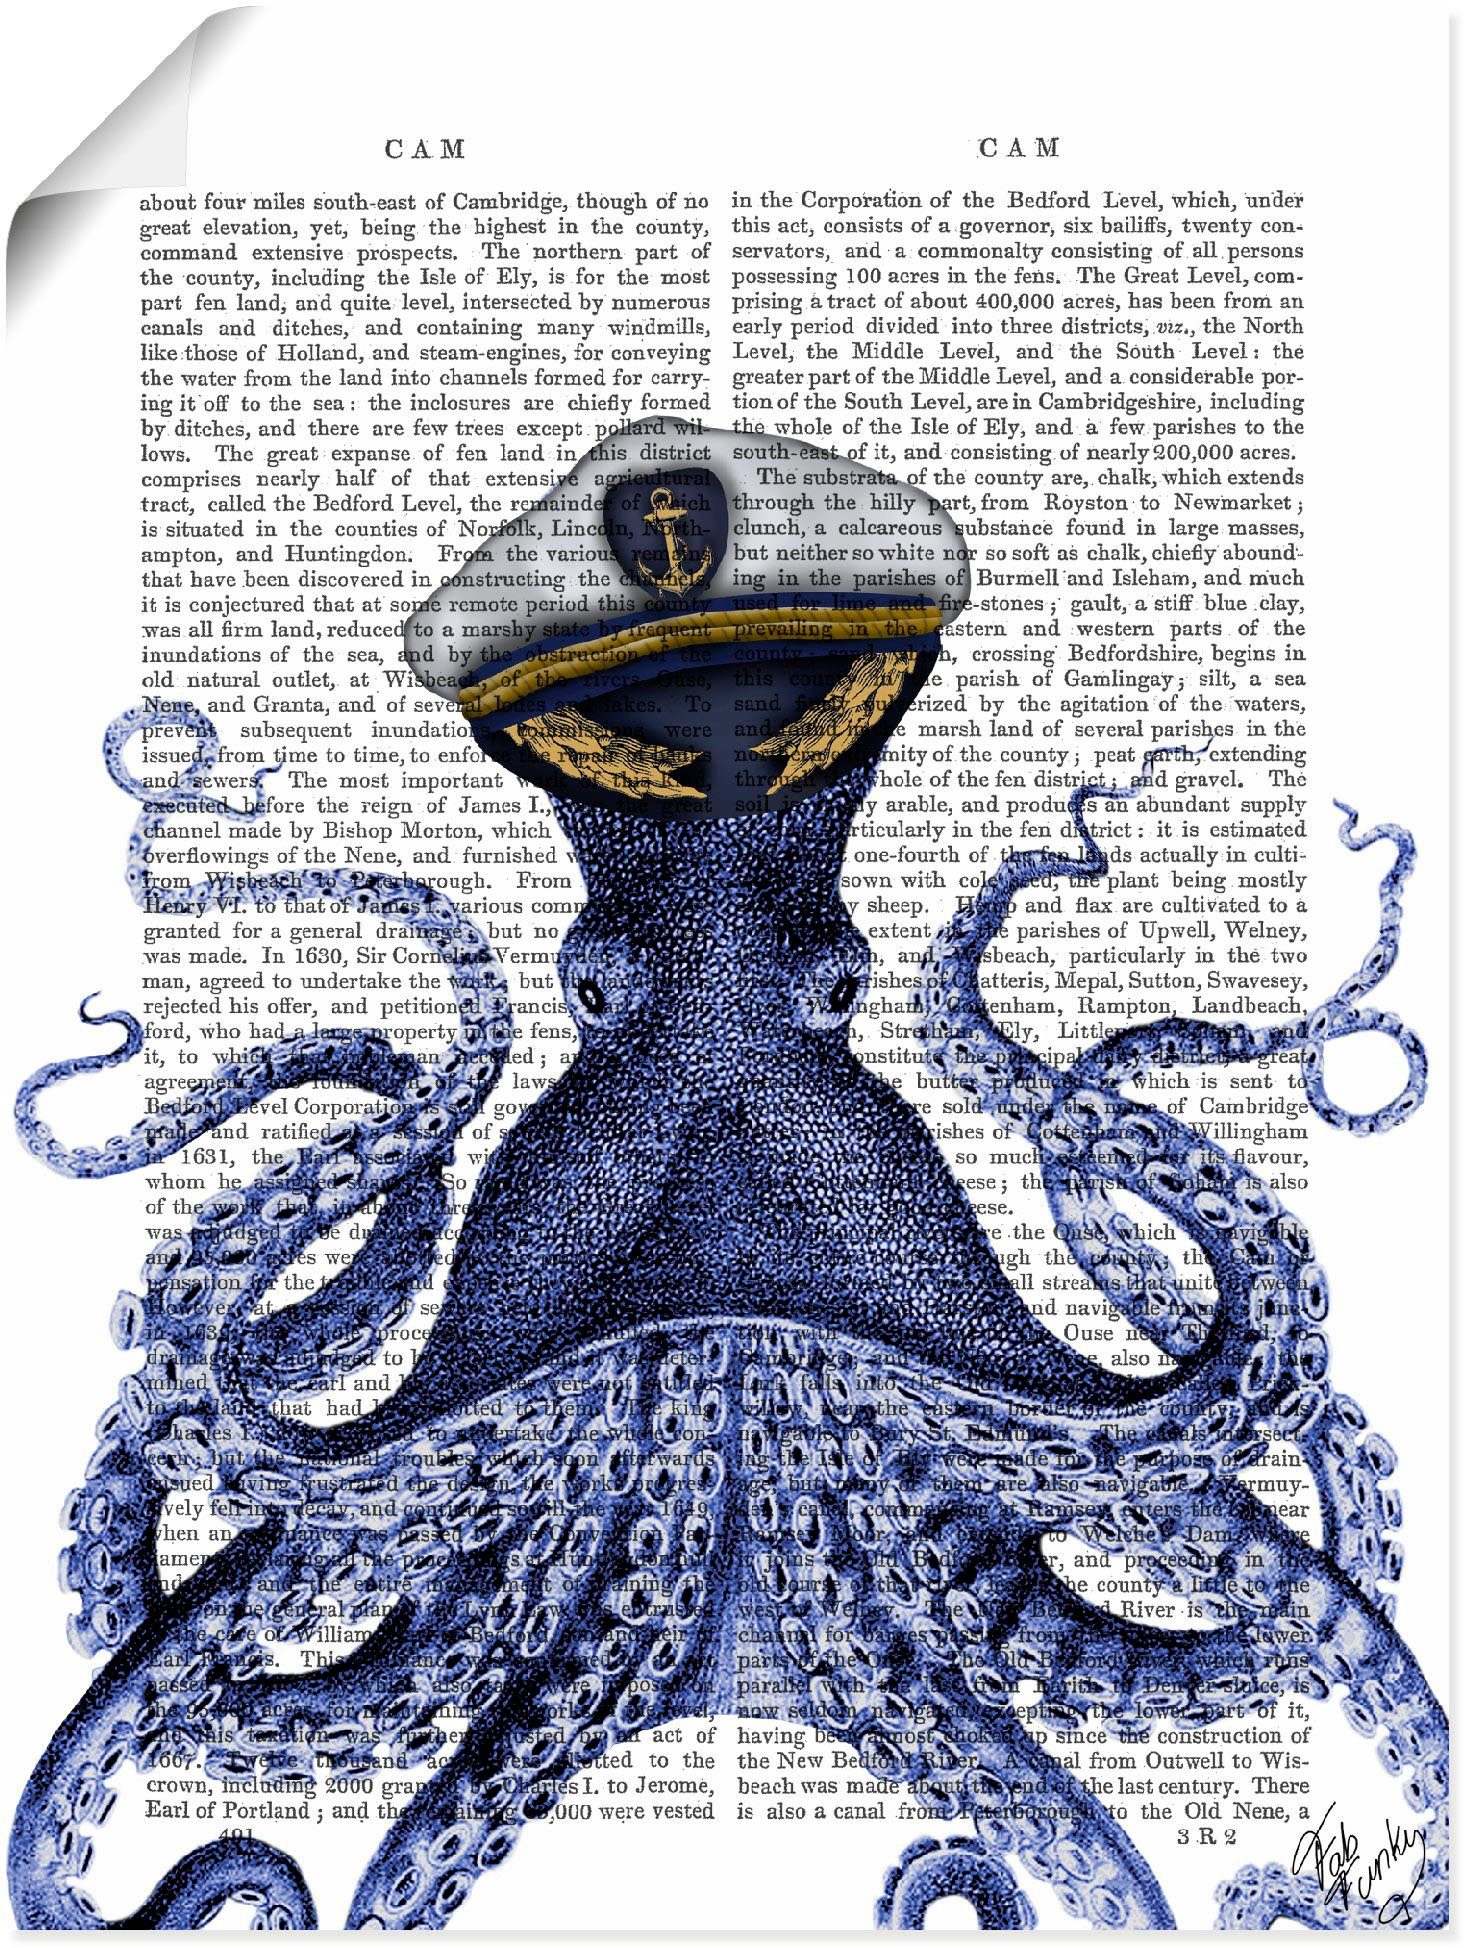 Poster Kapitän (1 Leinwandbild, St), als Artland oder Wandaufkleber Größen versch. Oktopus, Wassertiere in Wandbild Alubild,